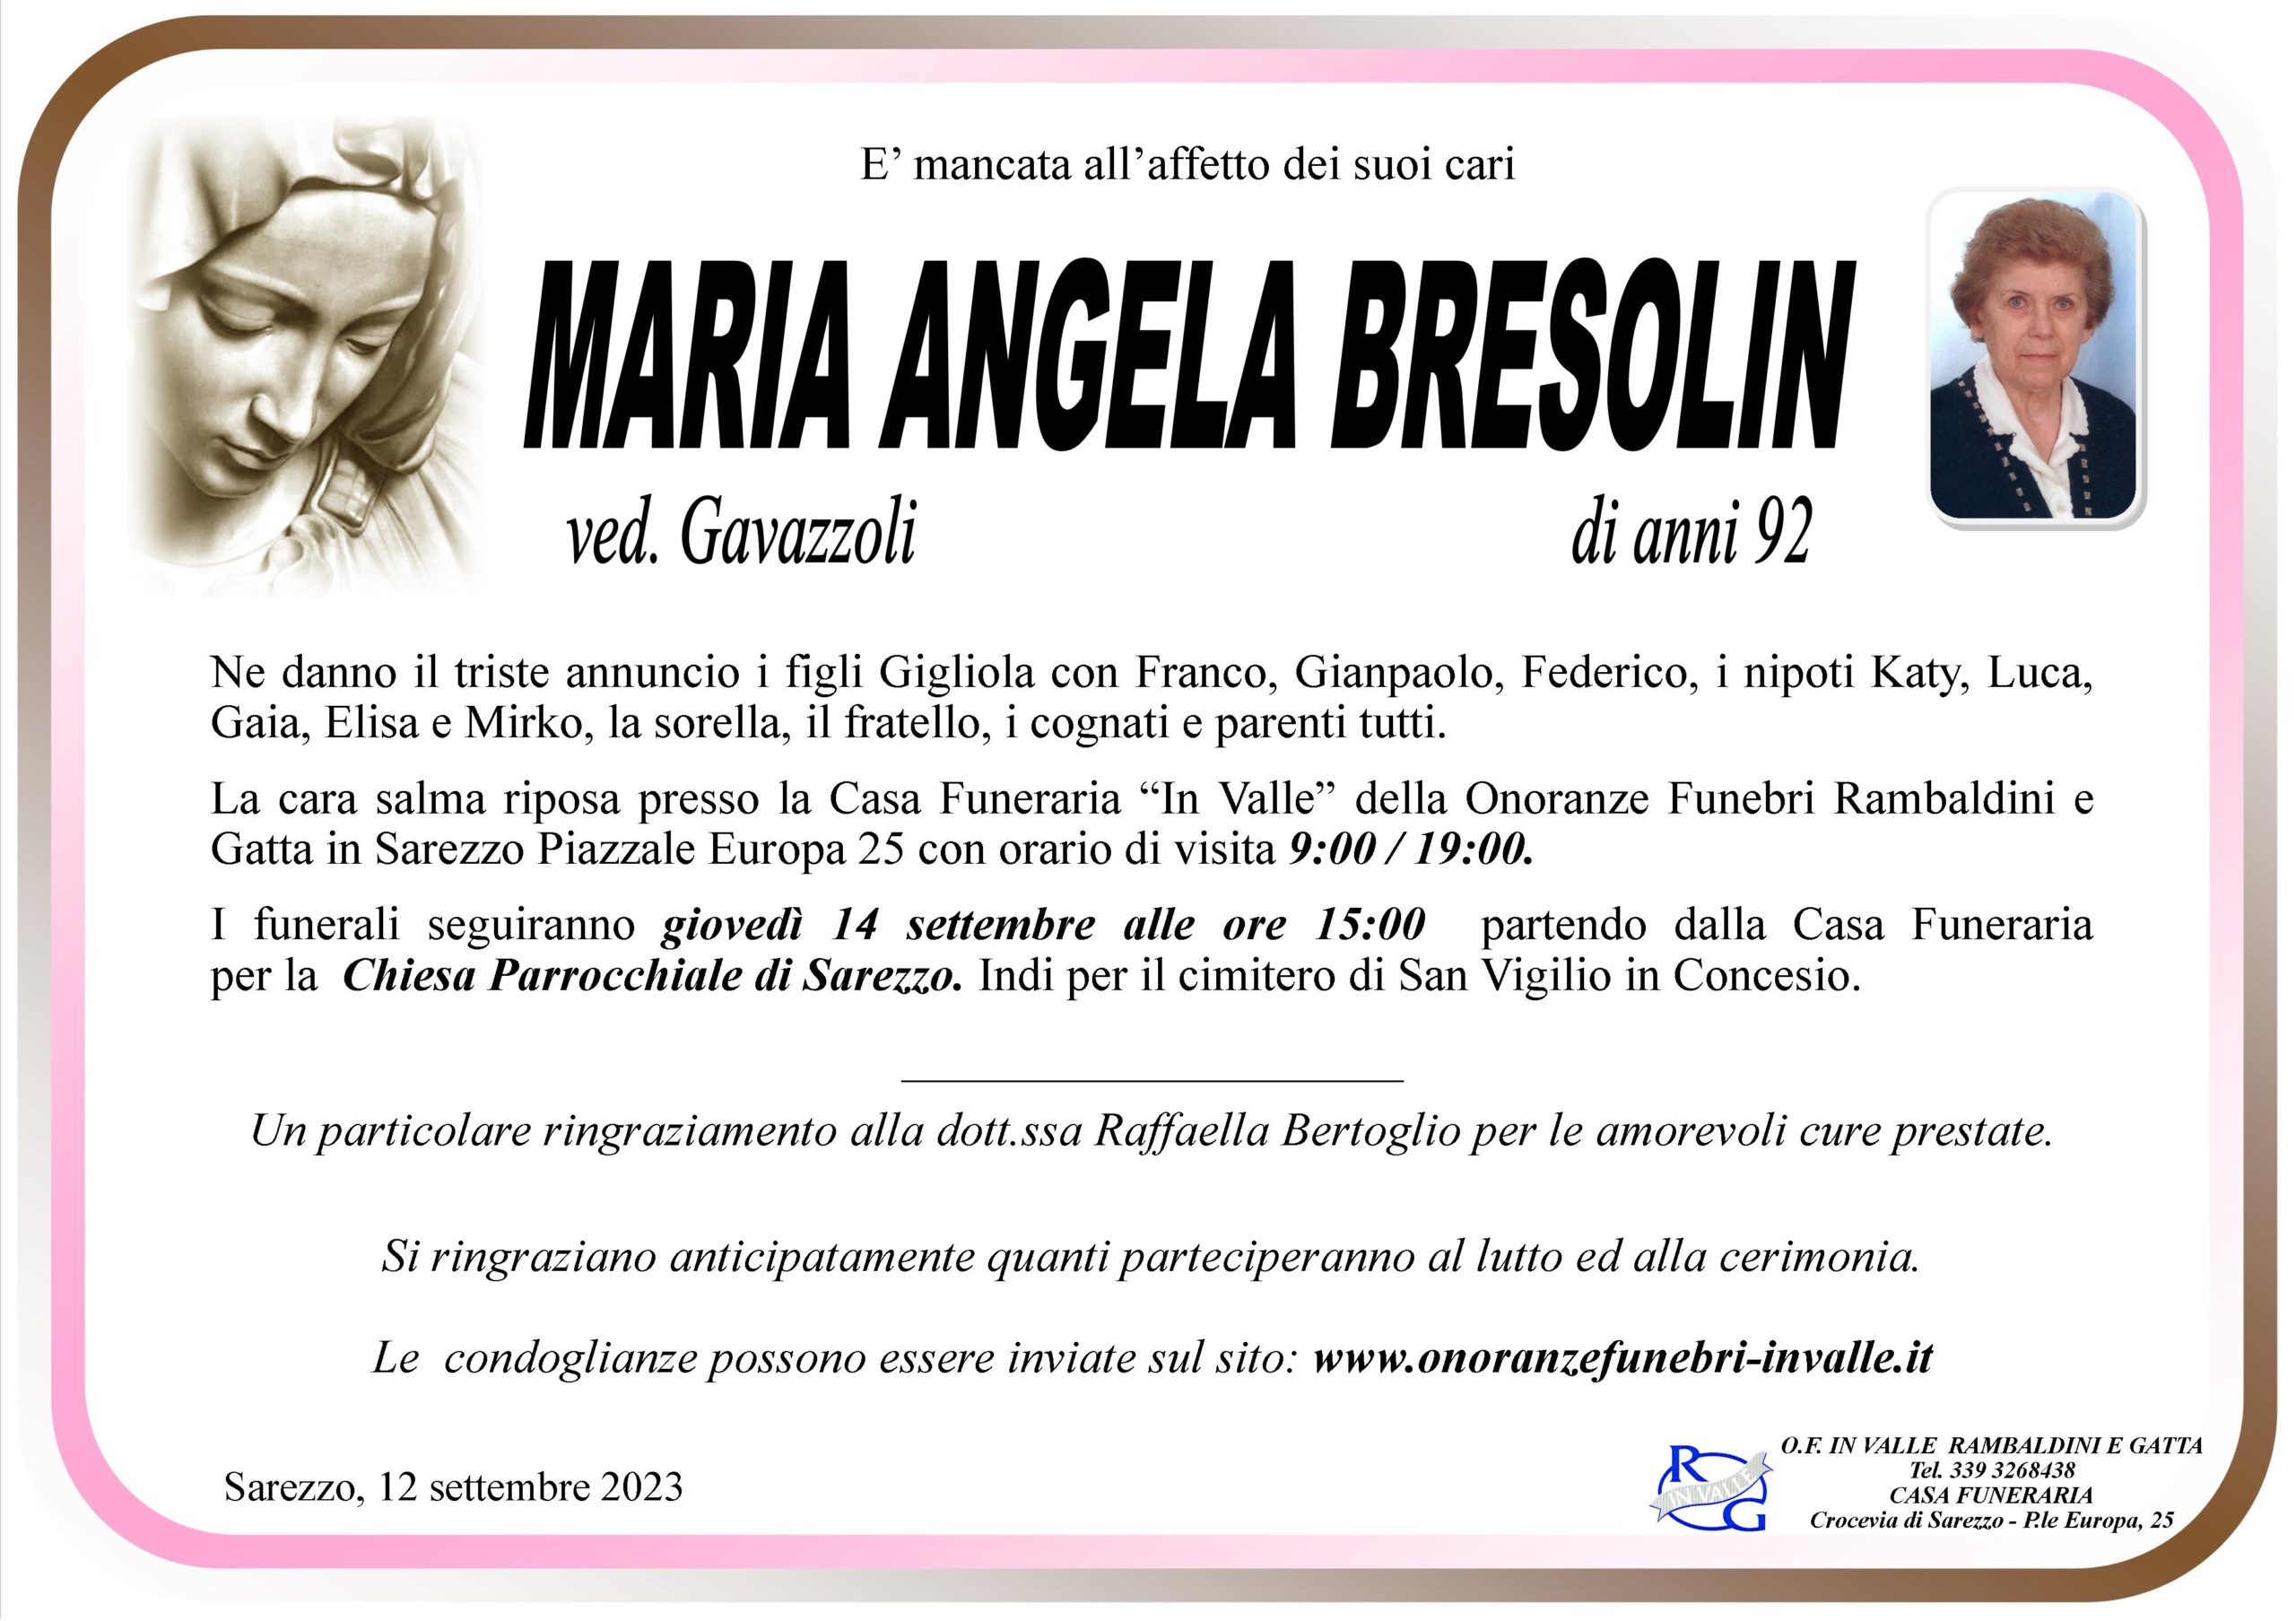 Al momento stai visualizzando Bresolin Maria Angela